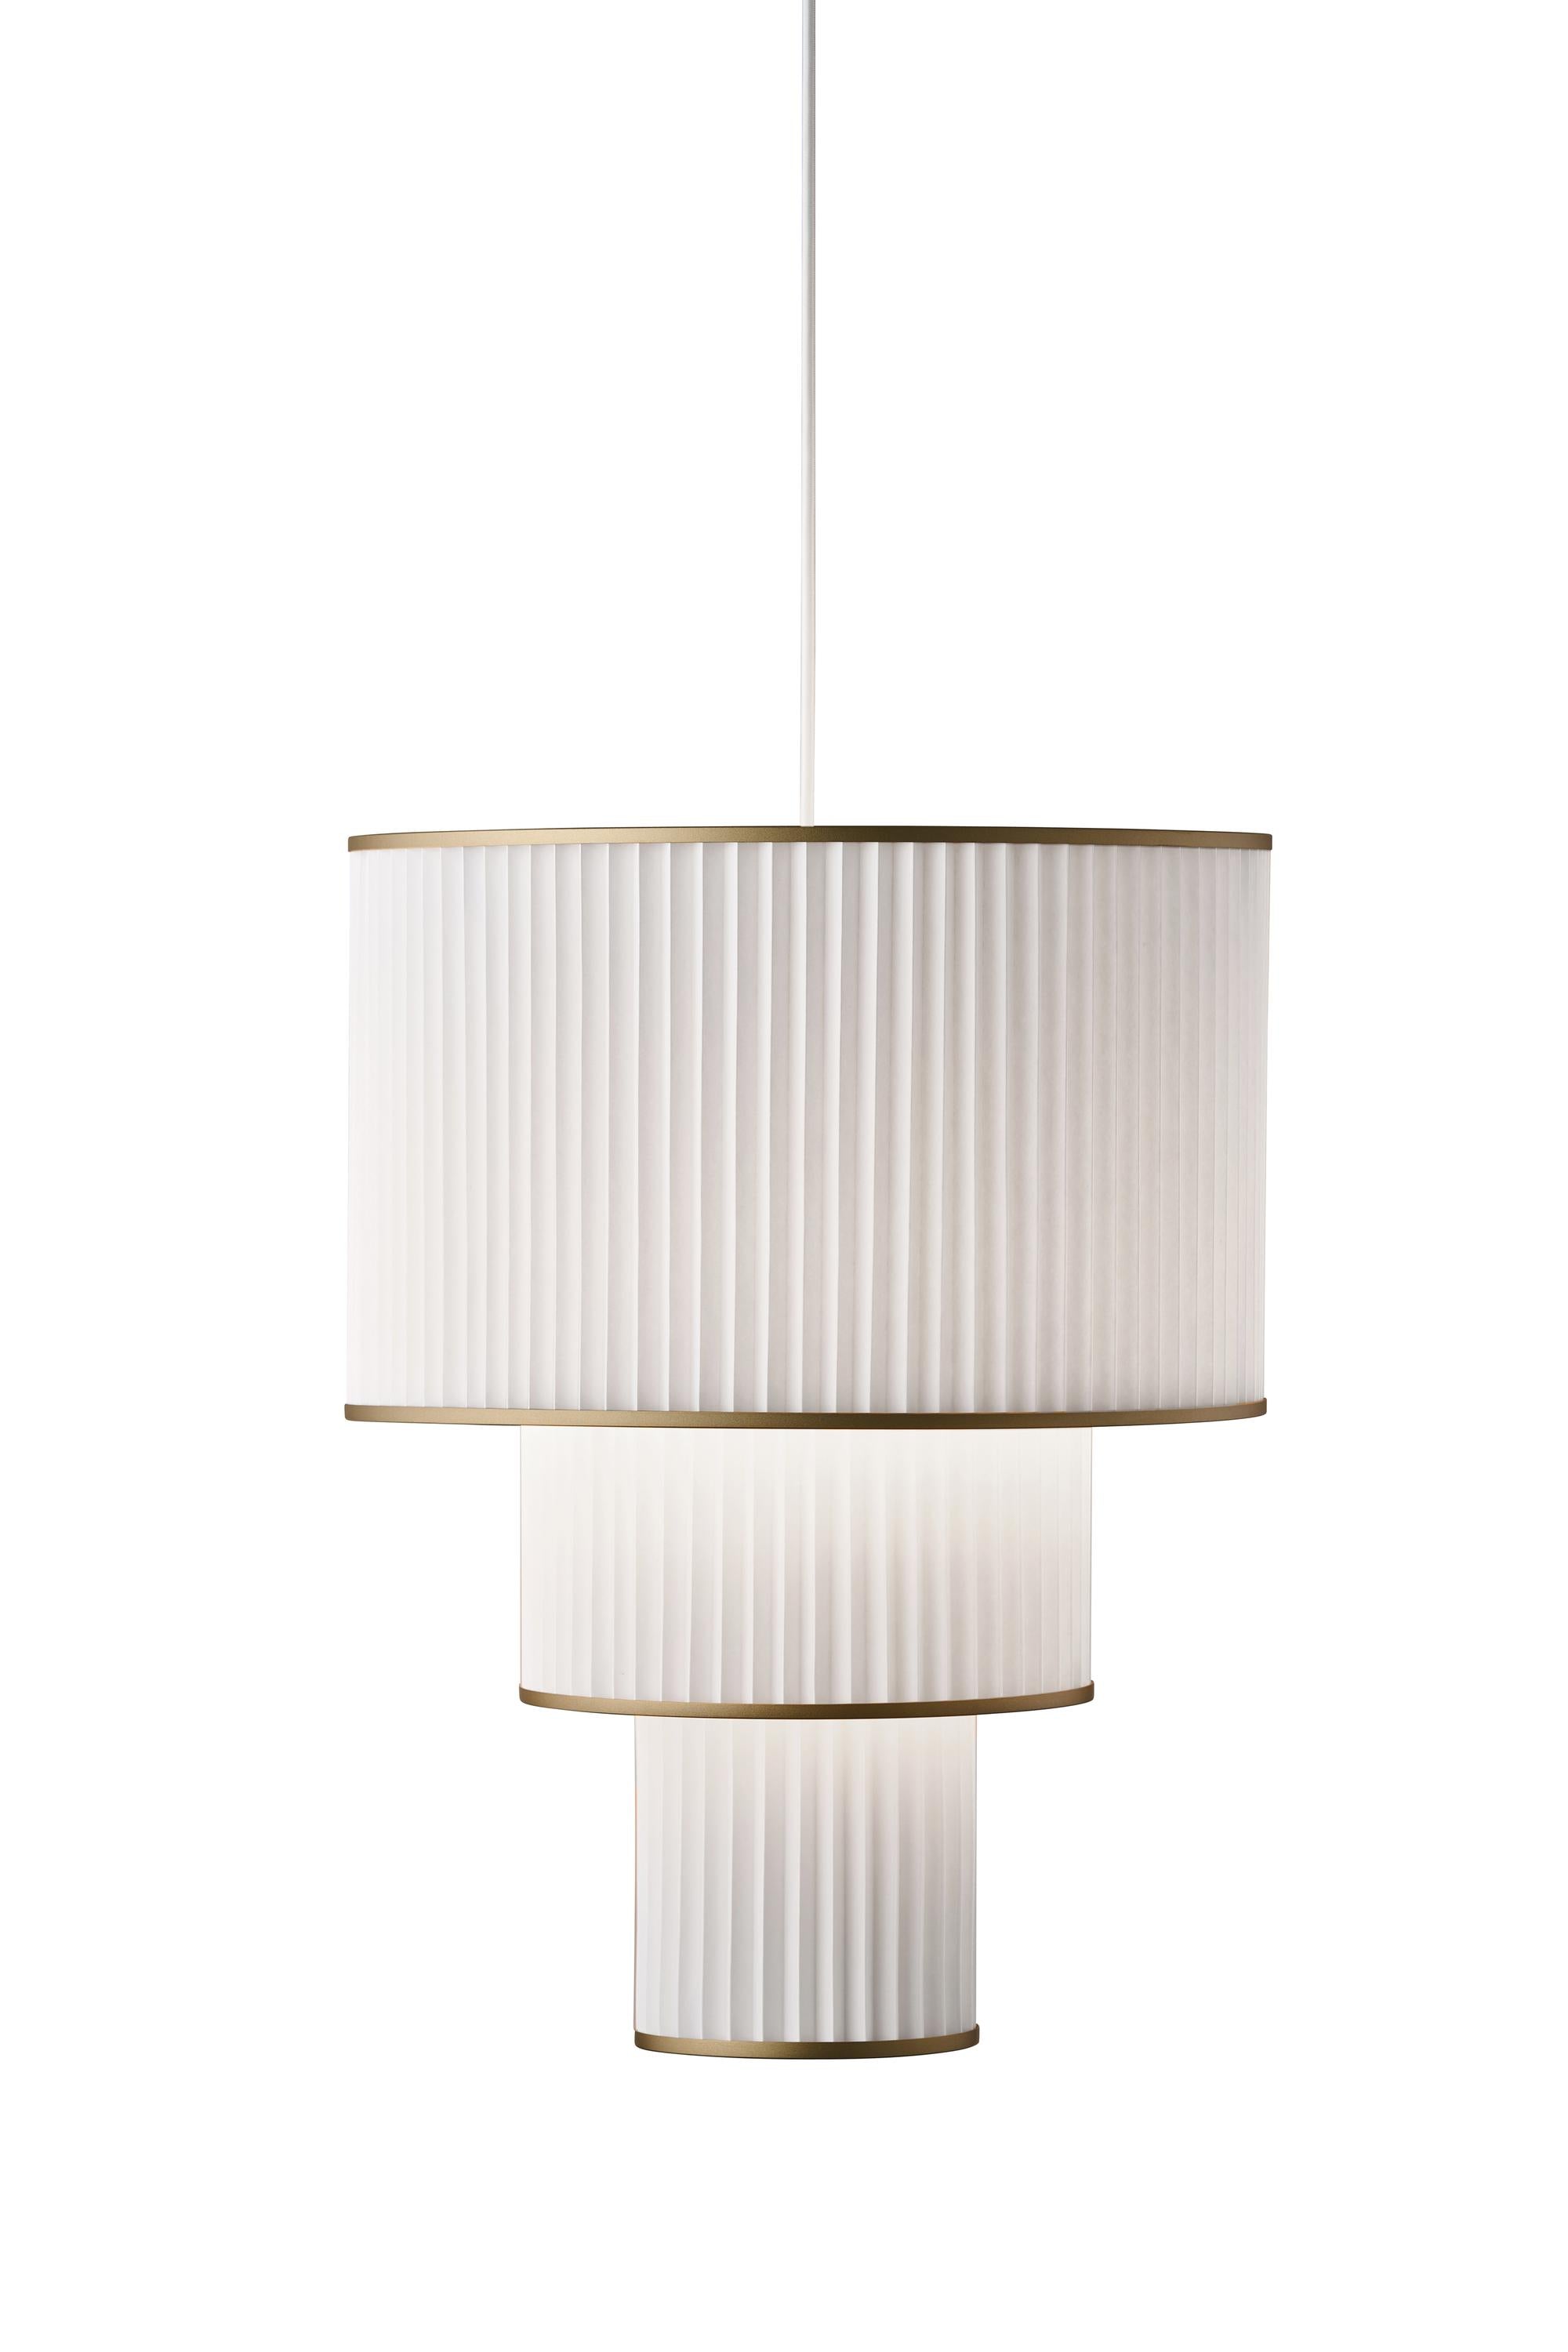 Le Klint PLIVELLO Lampe à suspension dorée / blanc avec 3 nuances (S M L)